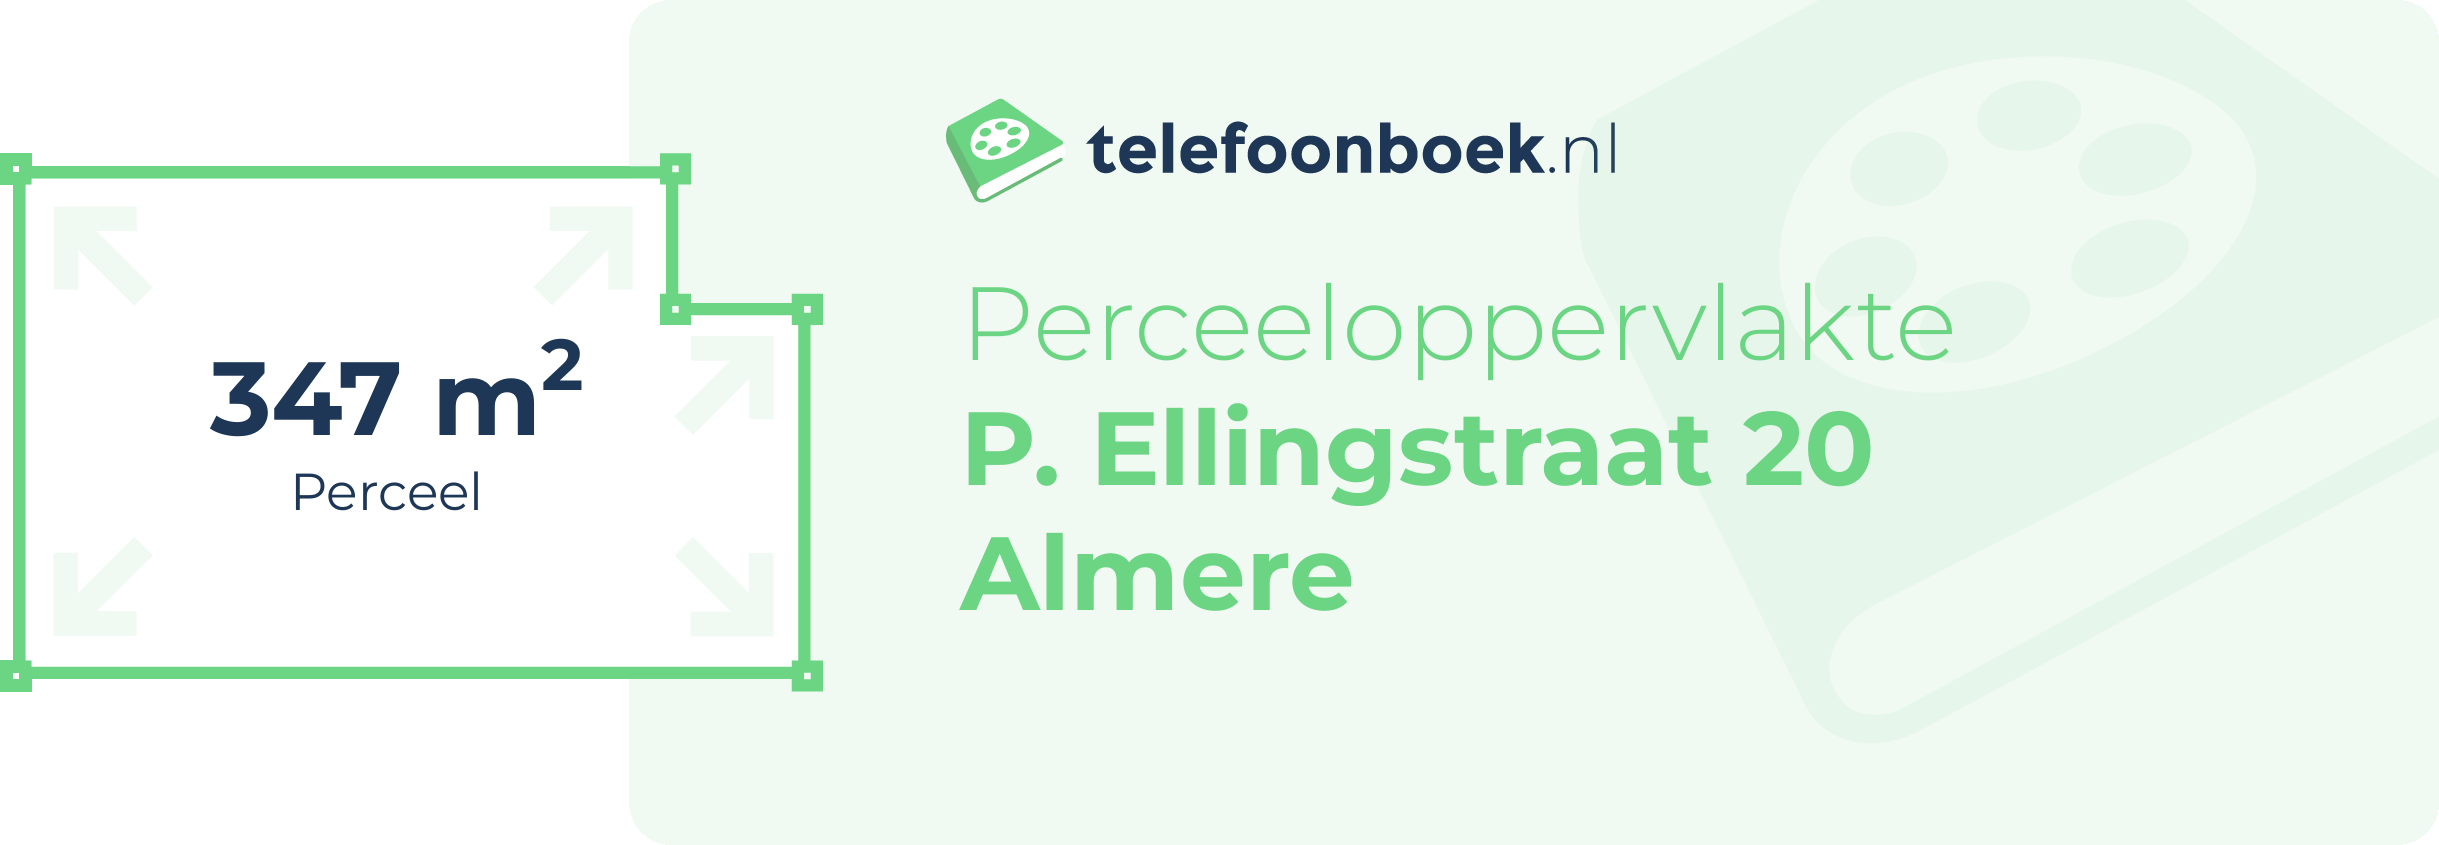 Perceeloppervlakte P. Ellingstraat 20 Almere